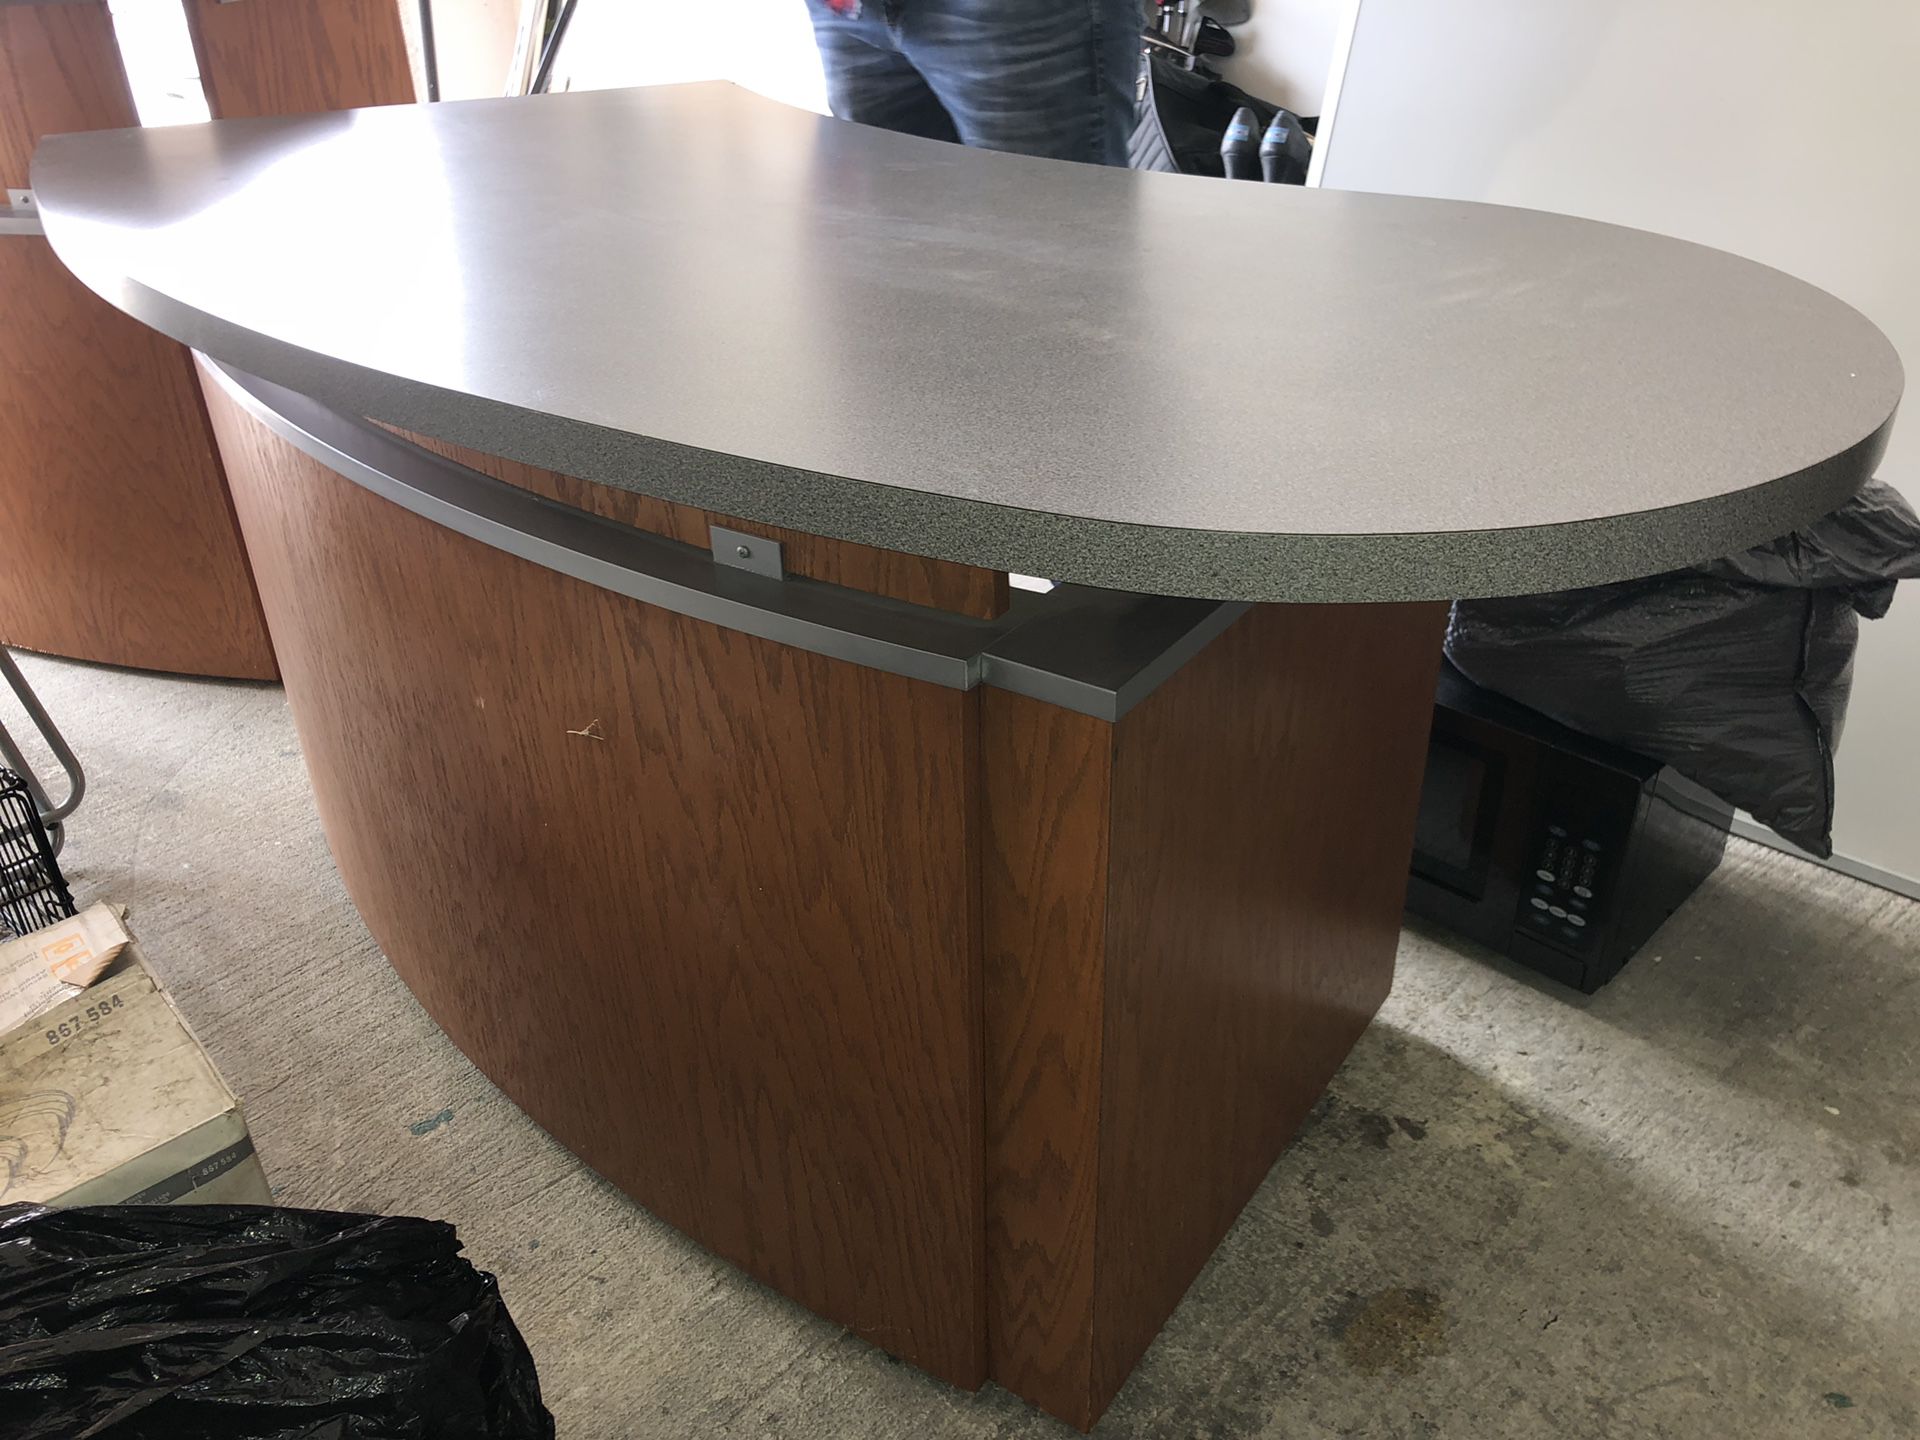 Office furniture-registration counter/desk 2x